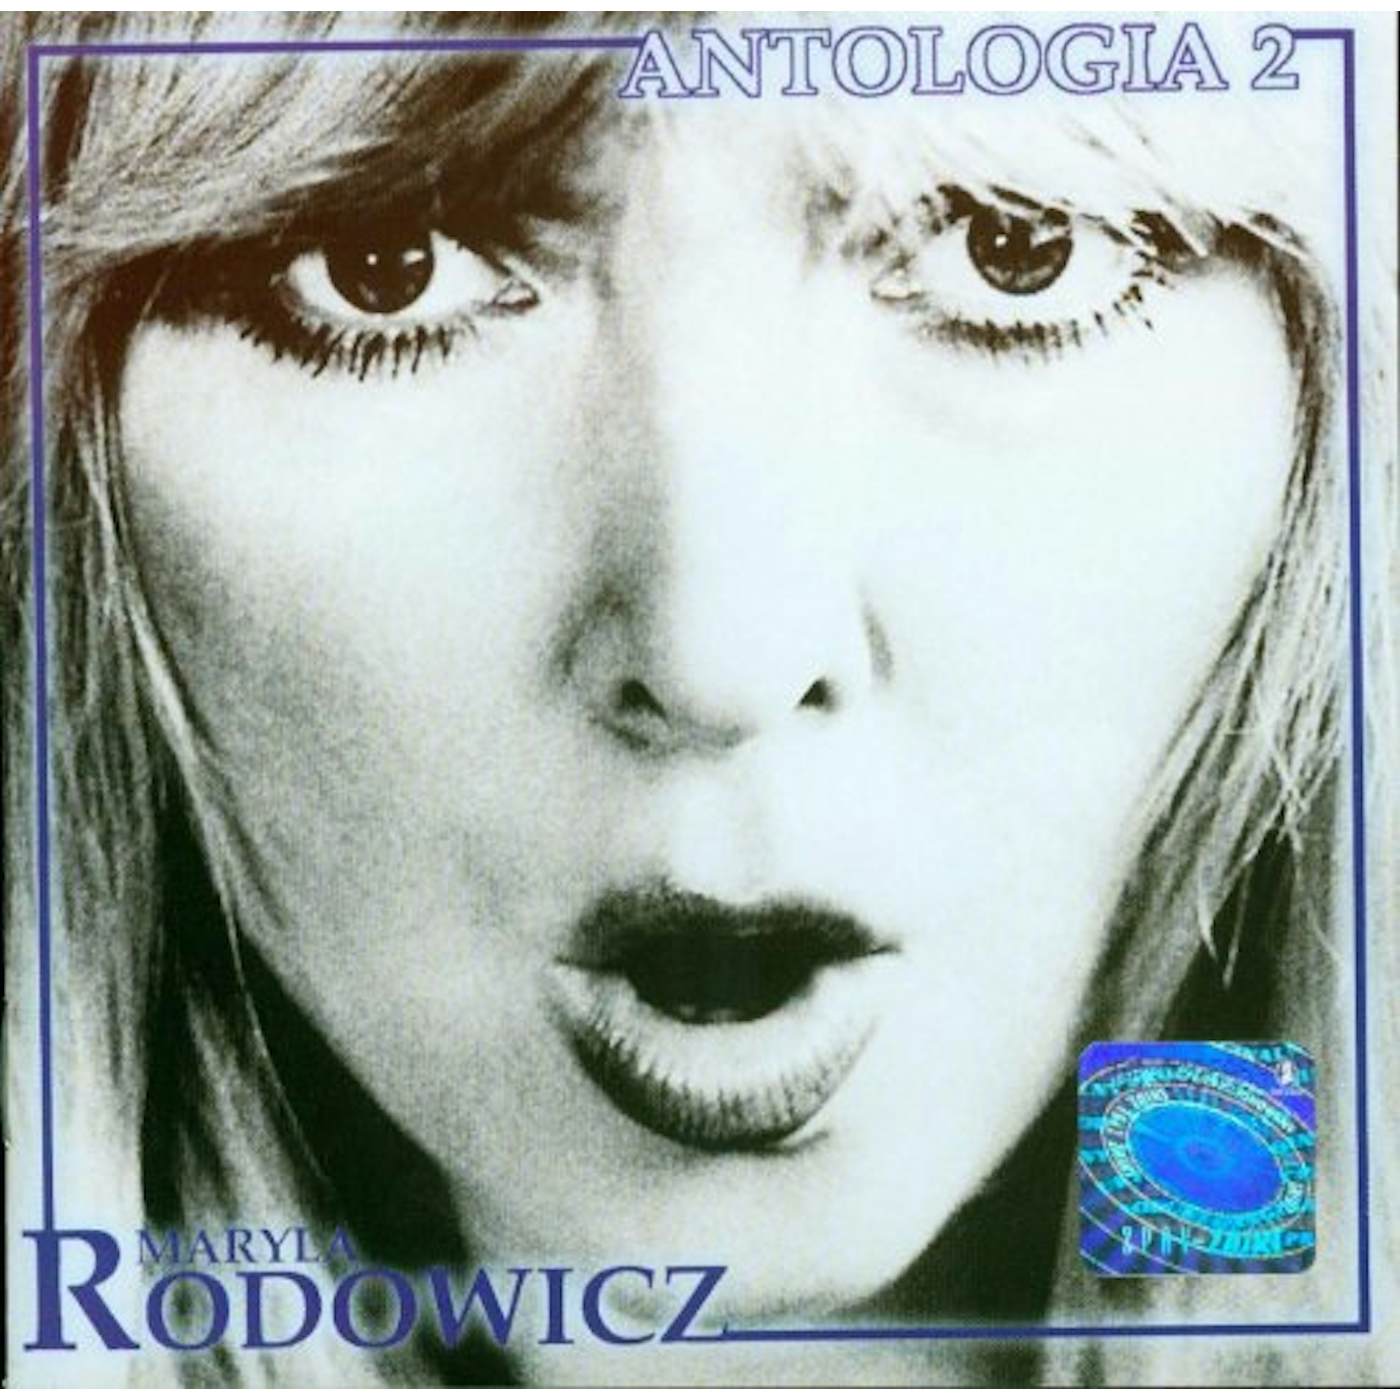 Maryla Rodowicz ANTOLOGIA VOL2 CD